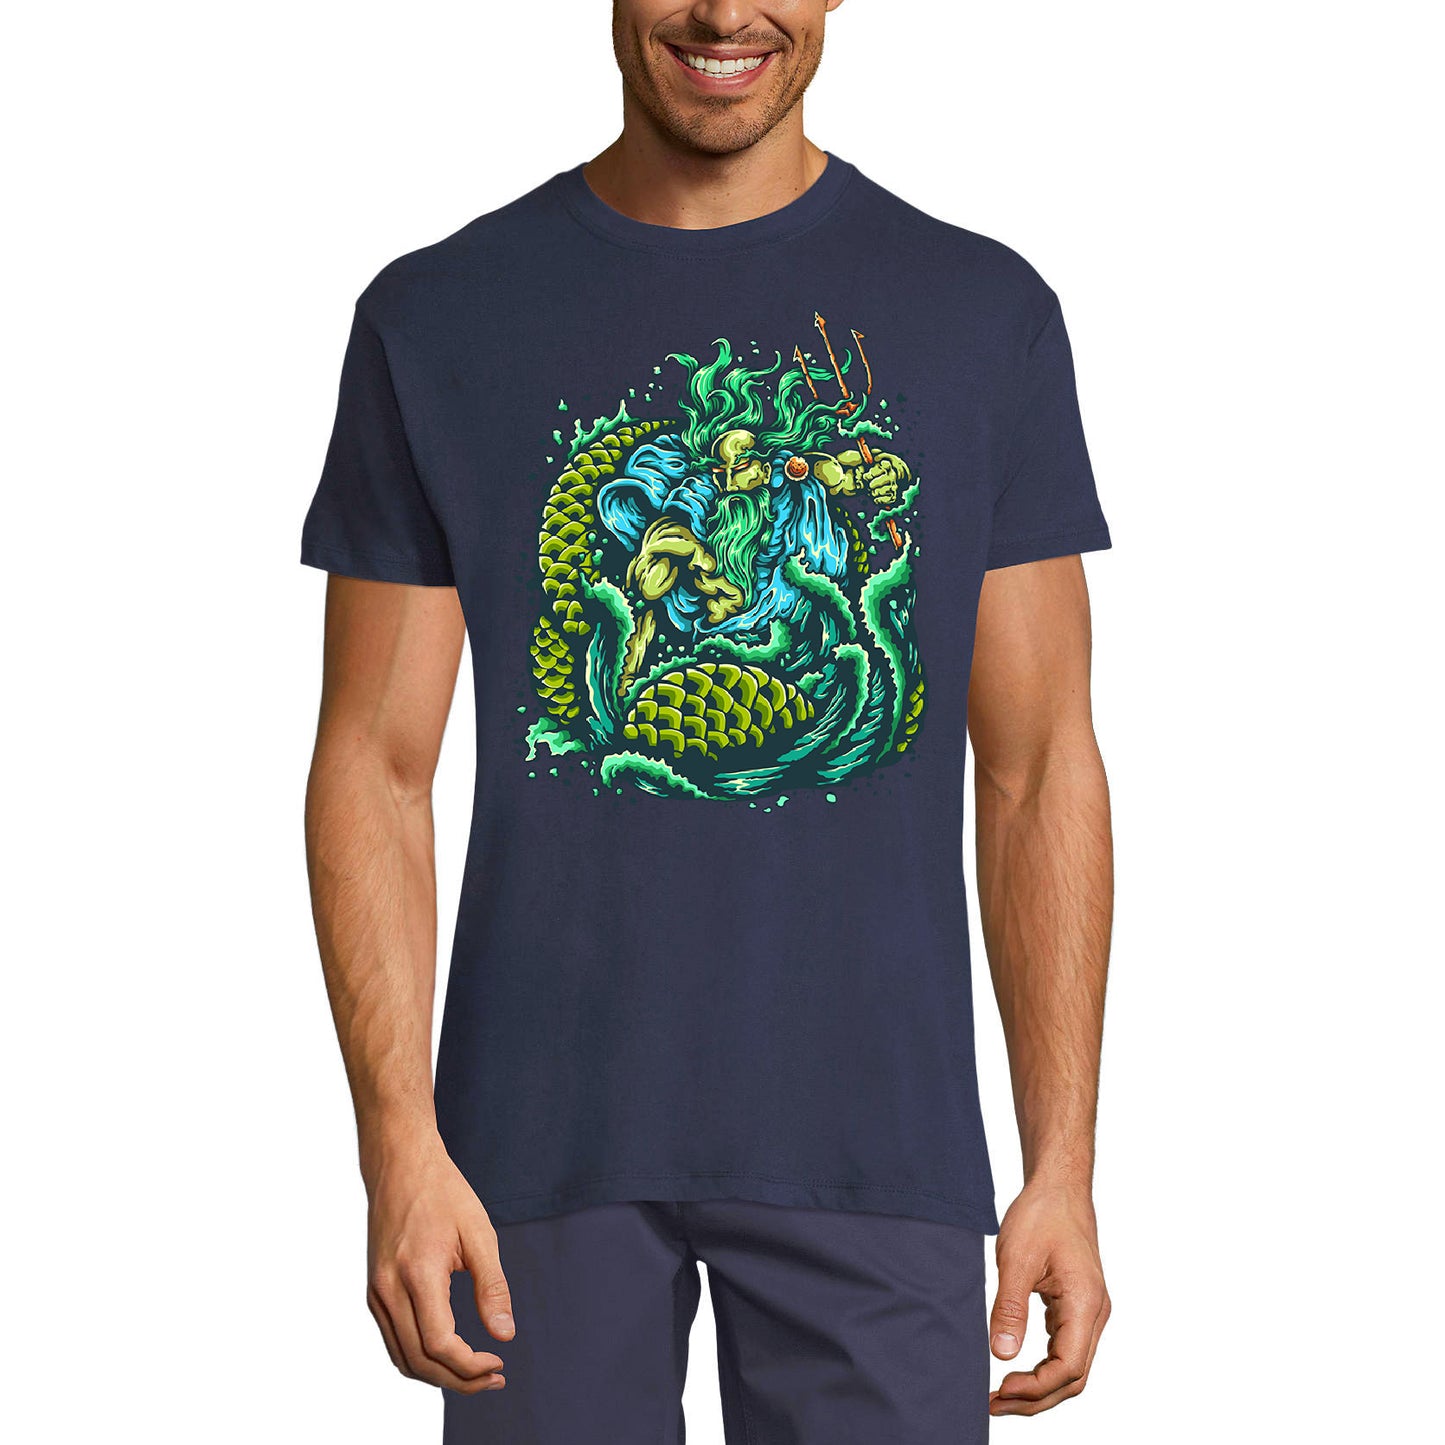 ULTRABASIC Men's Graphic T-Shirt God of the Sea - Movie Shirt for Men